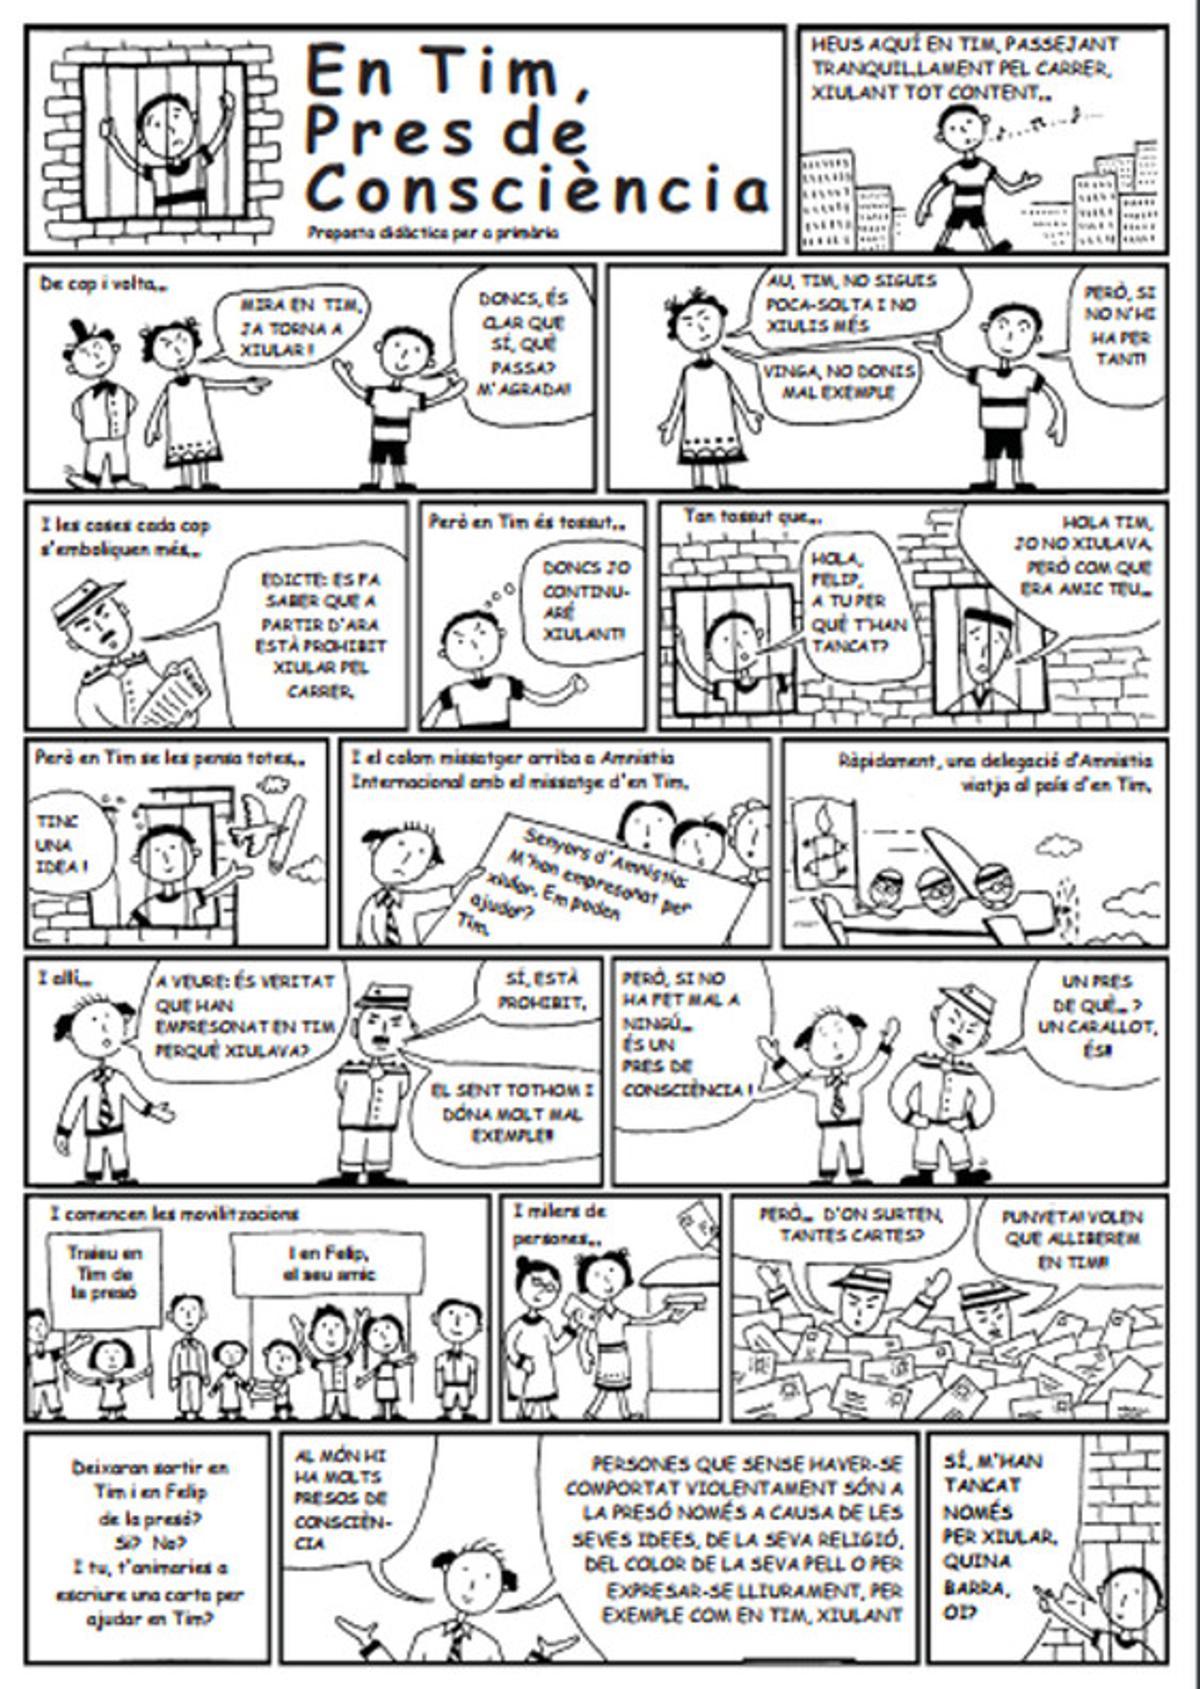 Fragment del còmic sobre presos de consciència procedent d’Amnistia Internacional que es disposaven a treballar els alumnes de 5è de primària de l’escola Immaculada Concepció de Gavà. 